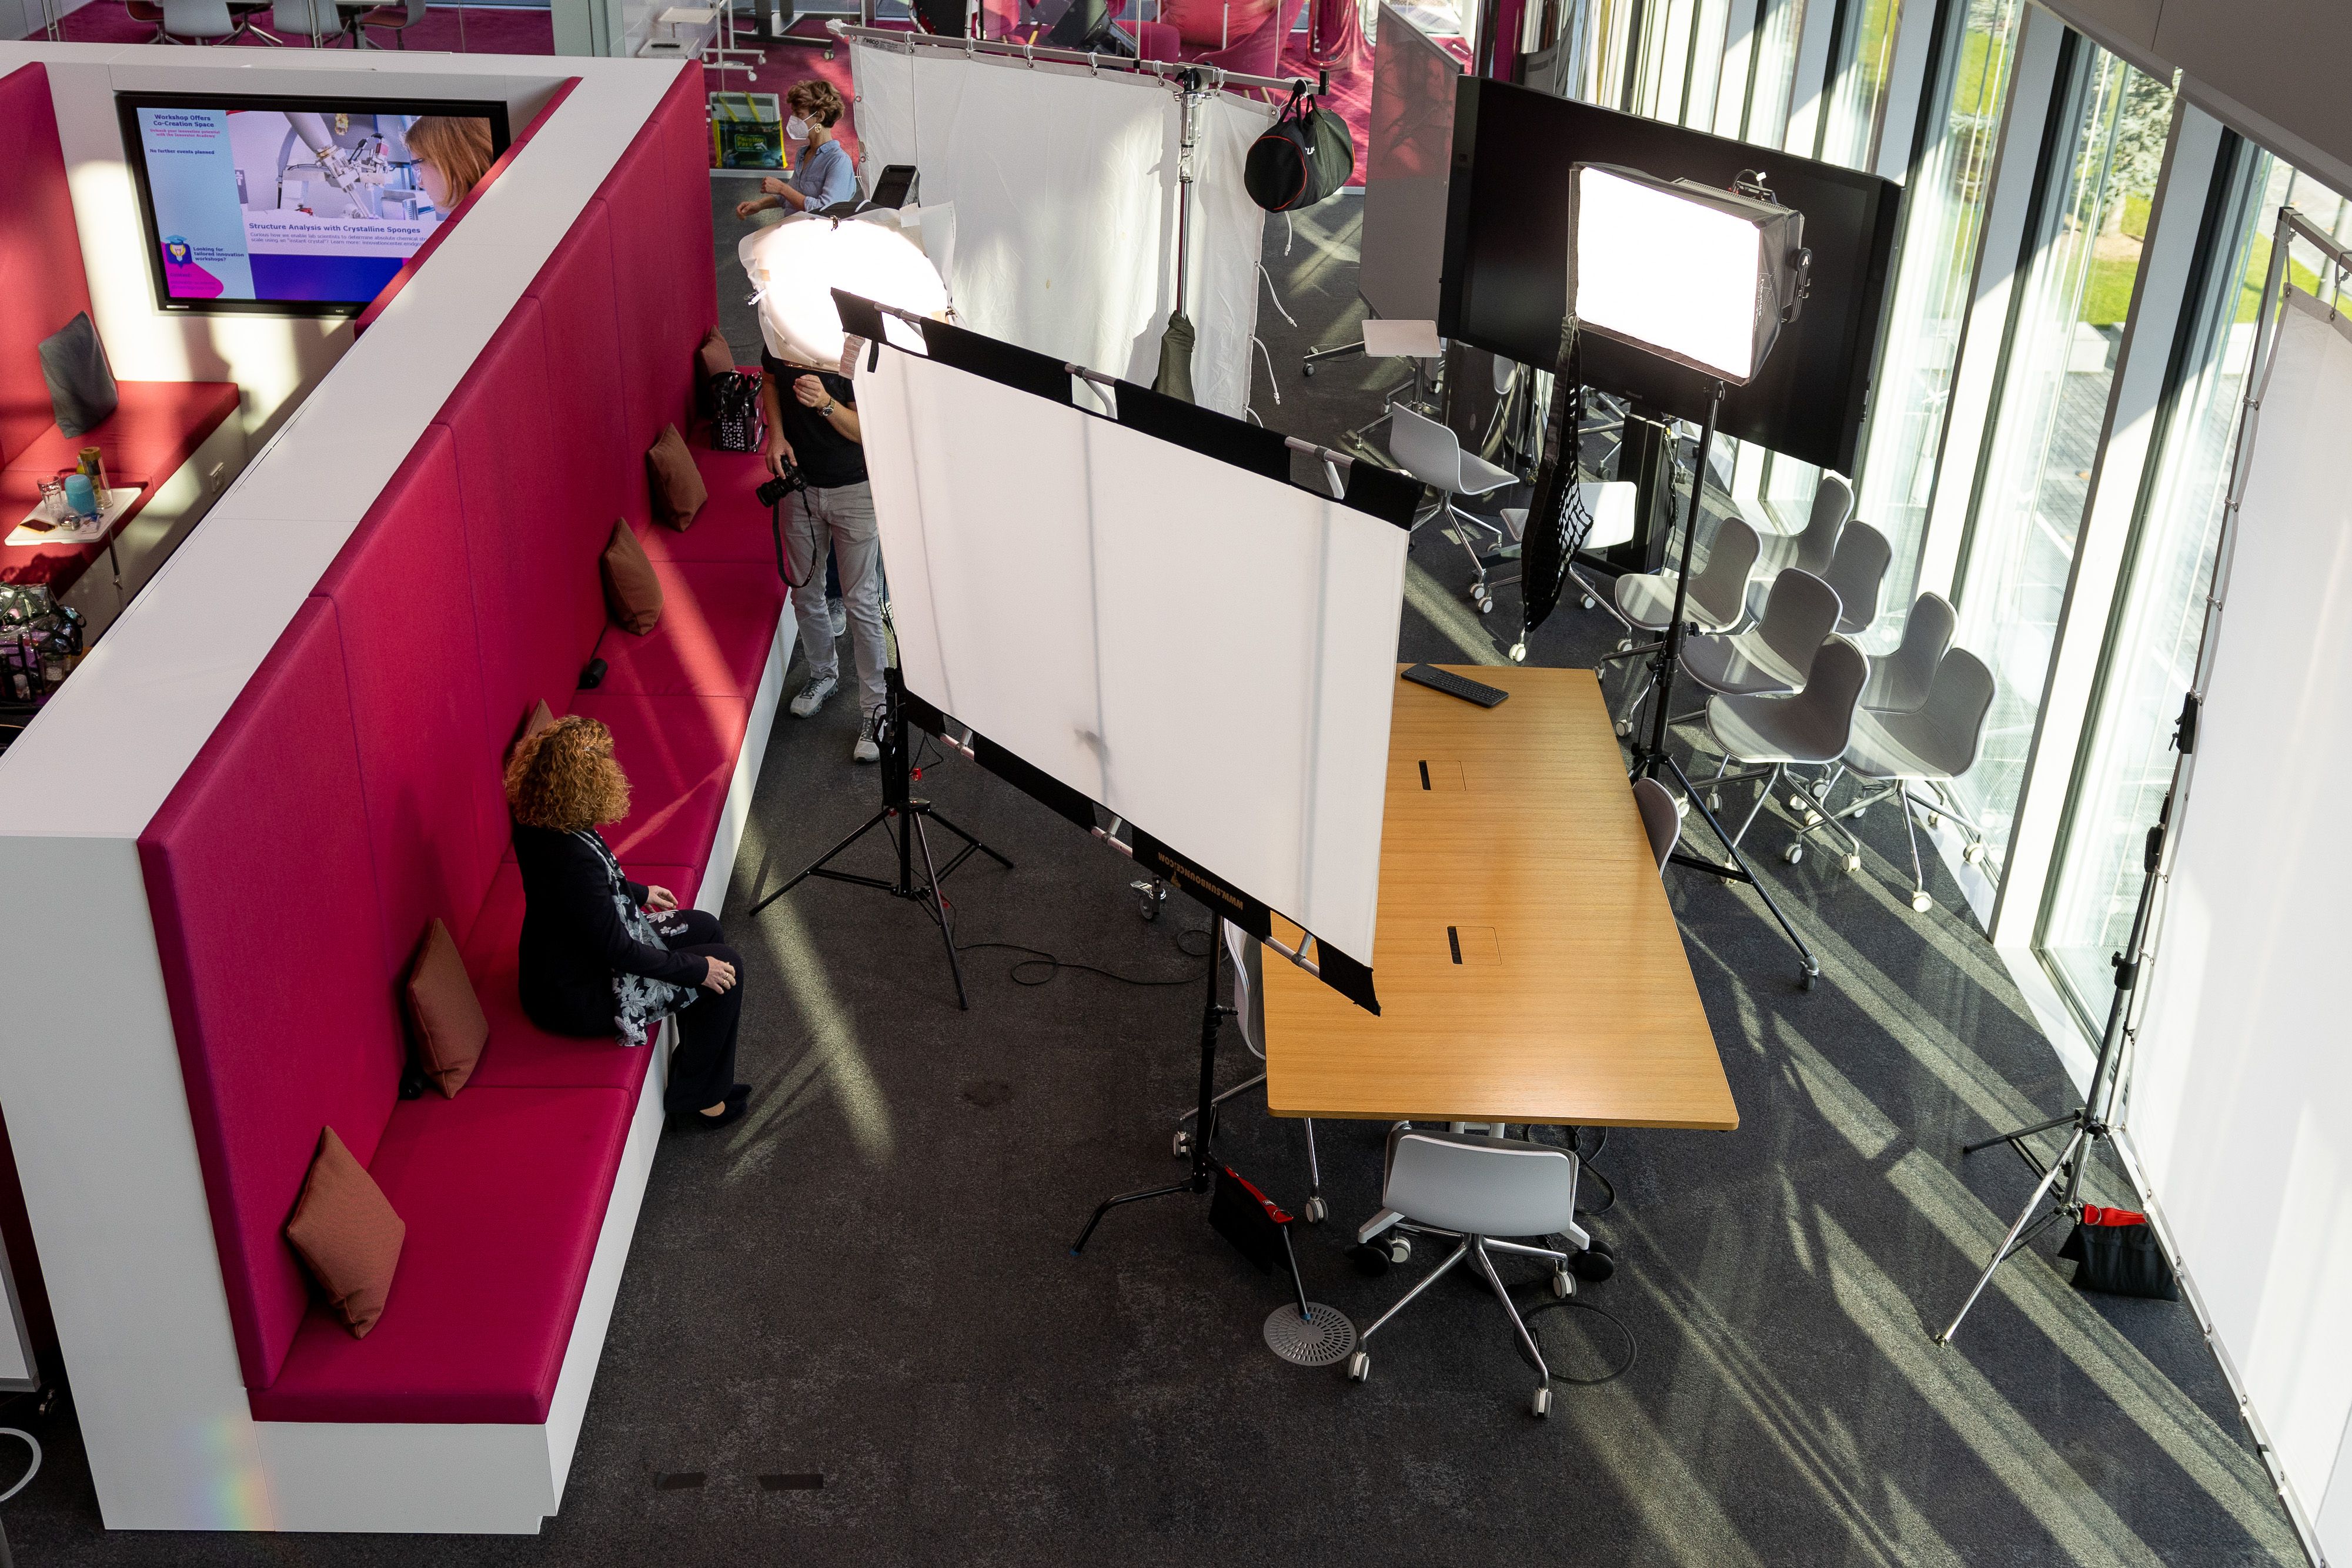 Shooting an 3 verschiedenen Fotosets im Innovation LAB bei Merck in Darmstadt. Werbefotografie & Portrait photography auf höchstem Niveau